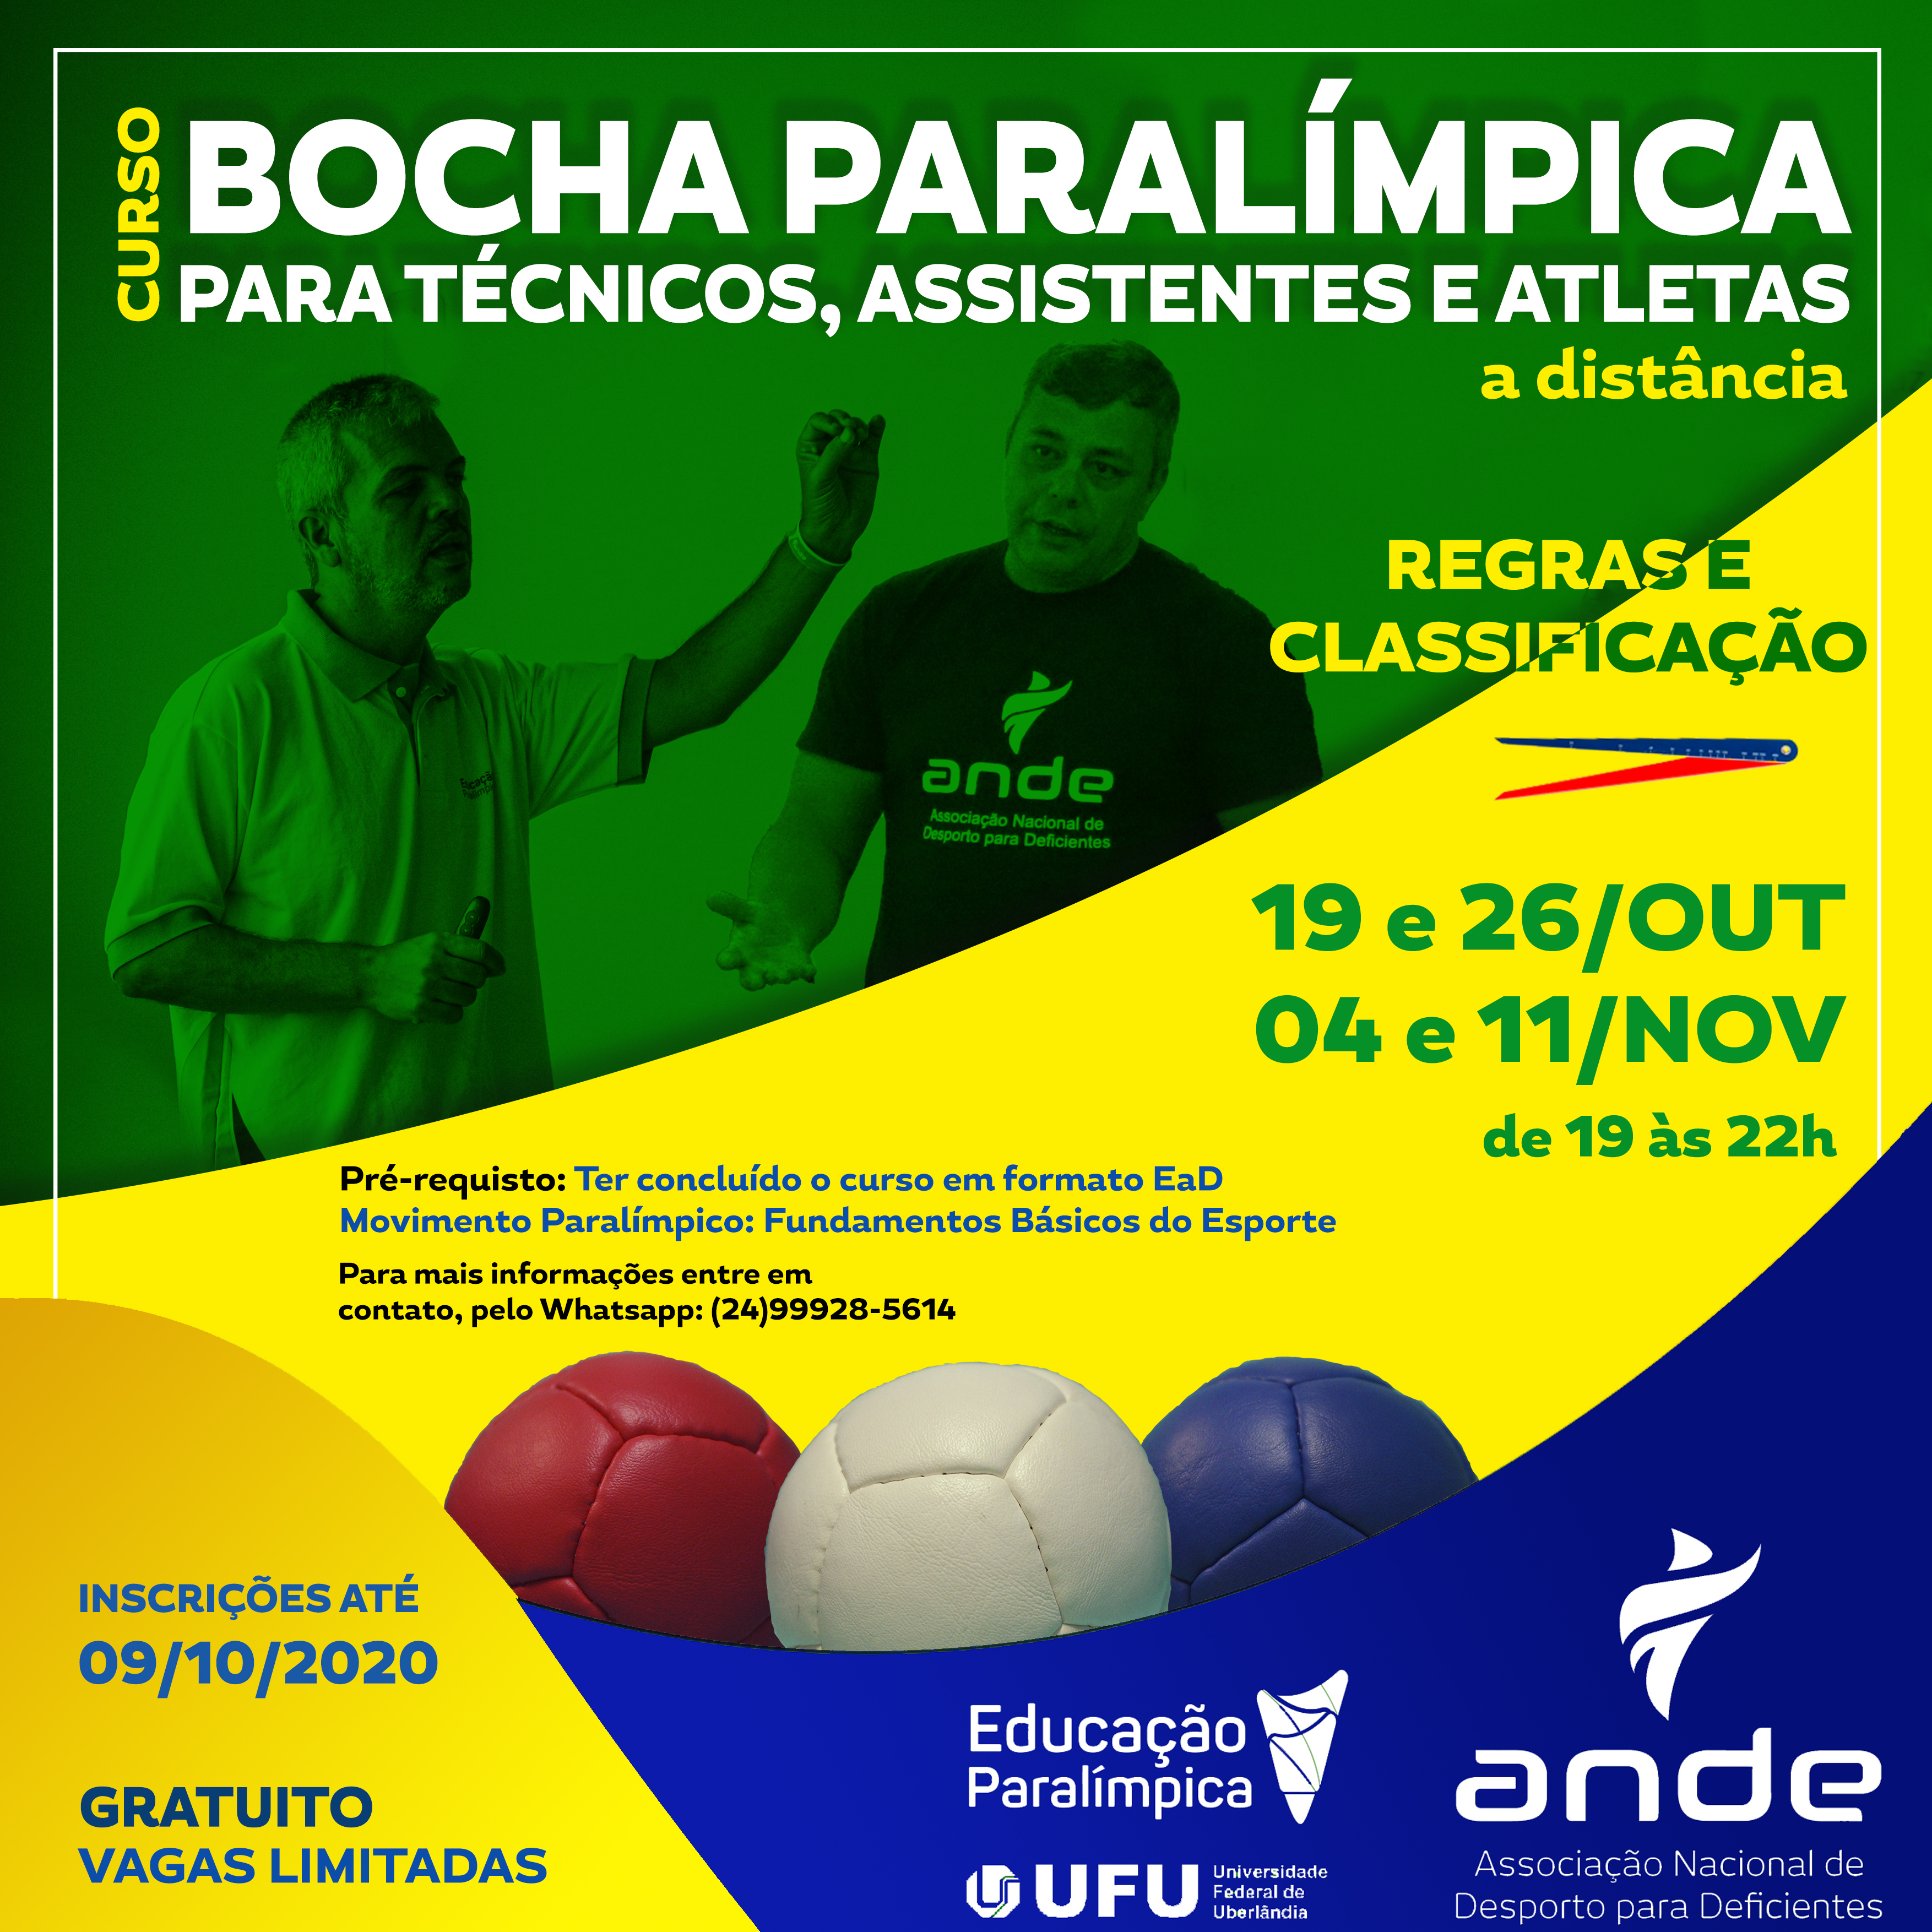 Rio de Janeiro sediará Campeonato Mundial de bocha em 2022 - CPB